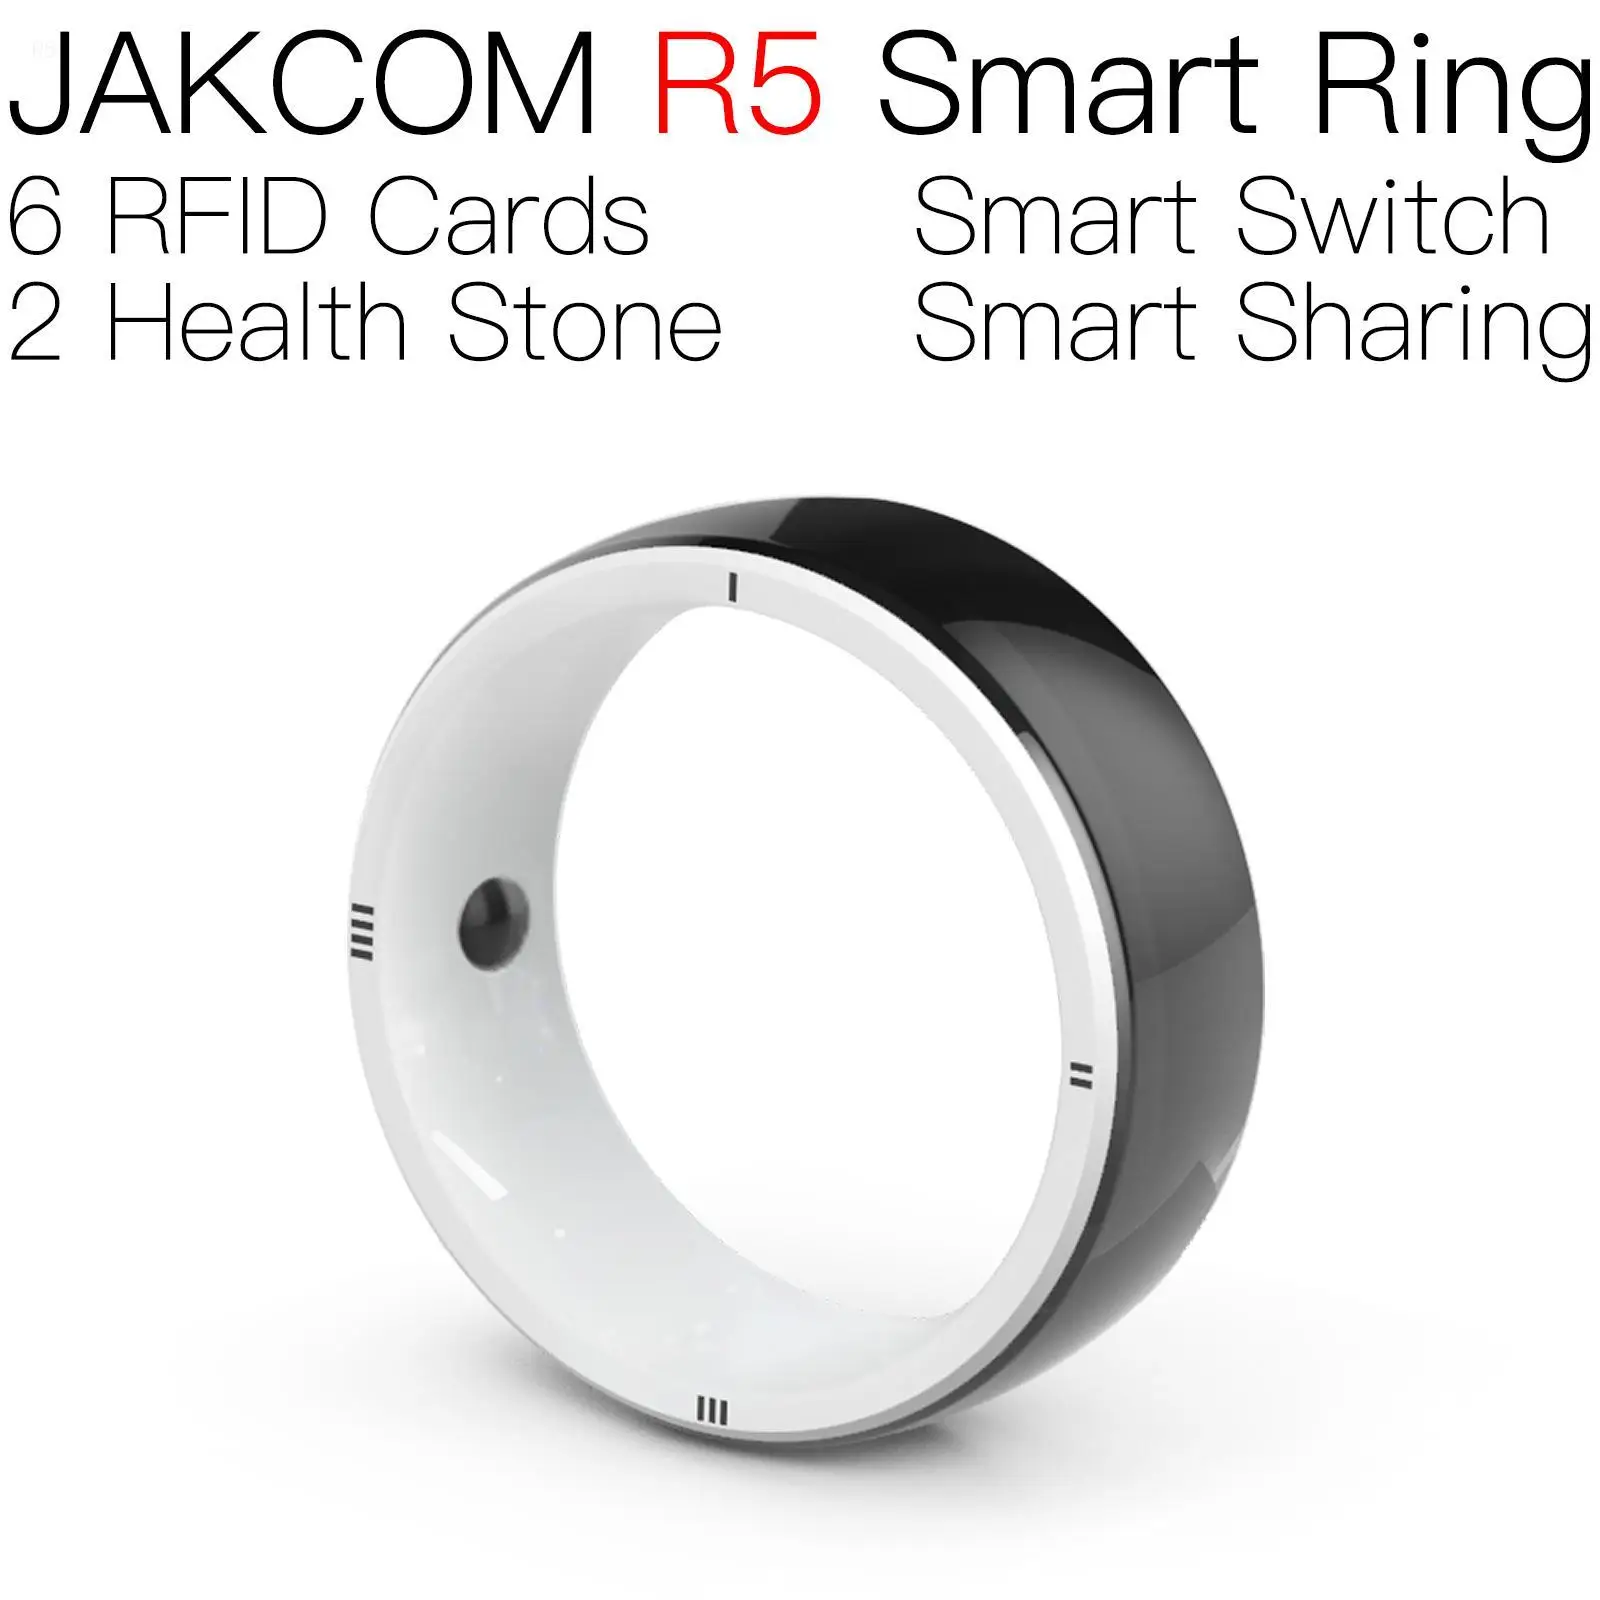 

Умное кольцо JAKCOM R5 лучше, чем считыватель транспондеров pet amibo fm11rf08, струйная ПВХ-карта a4 rfid-метка 125 кГц